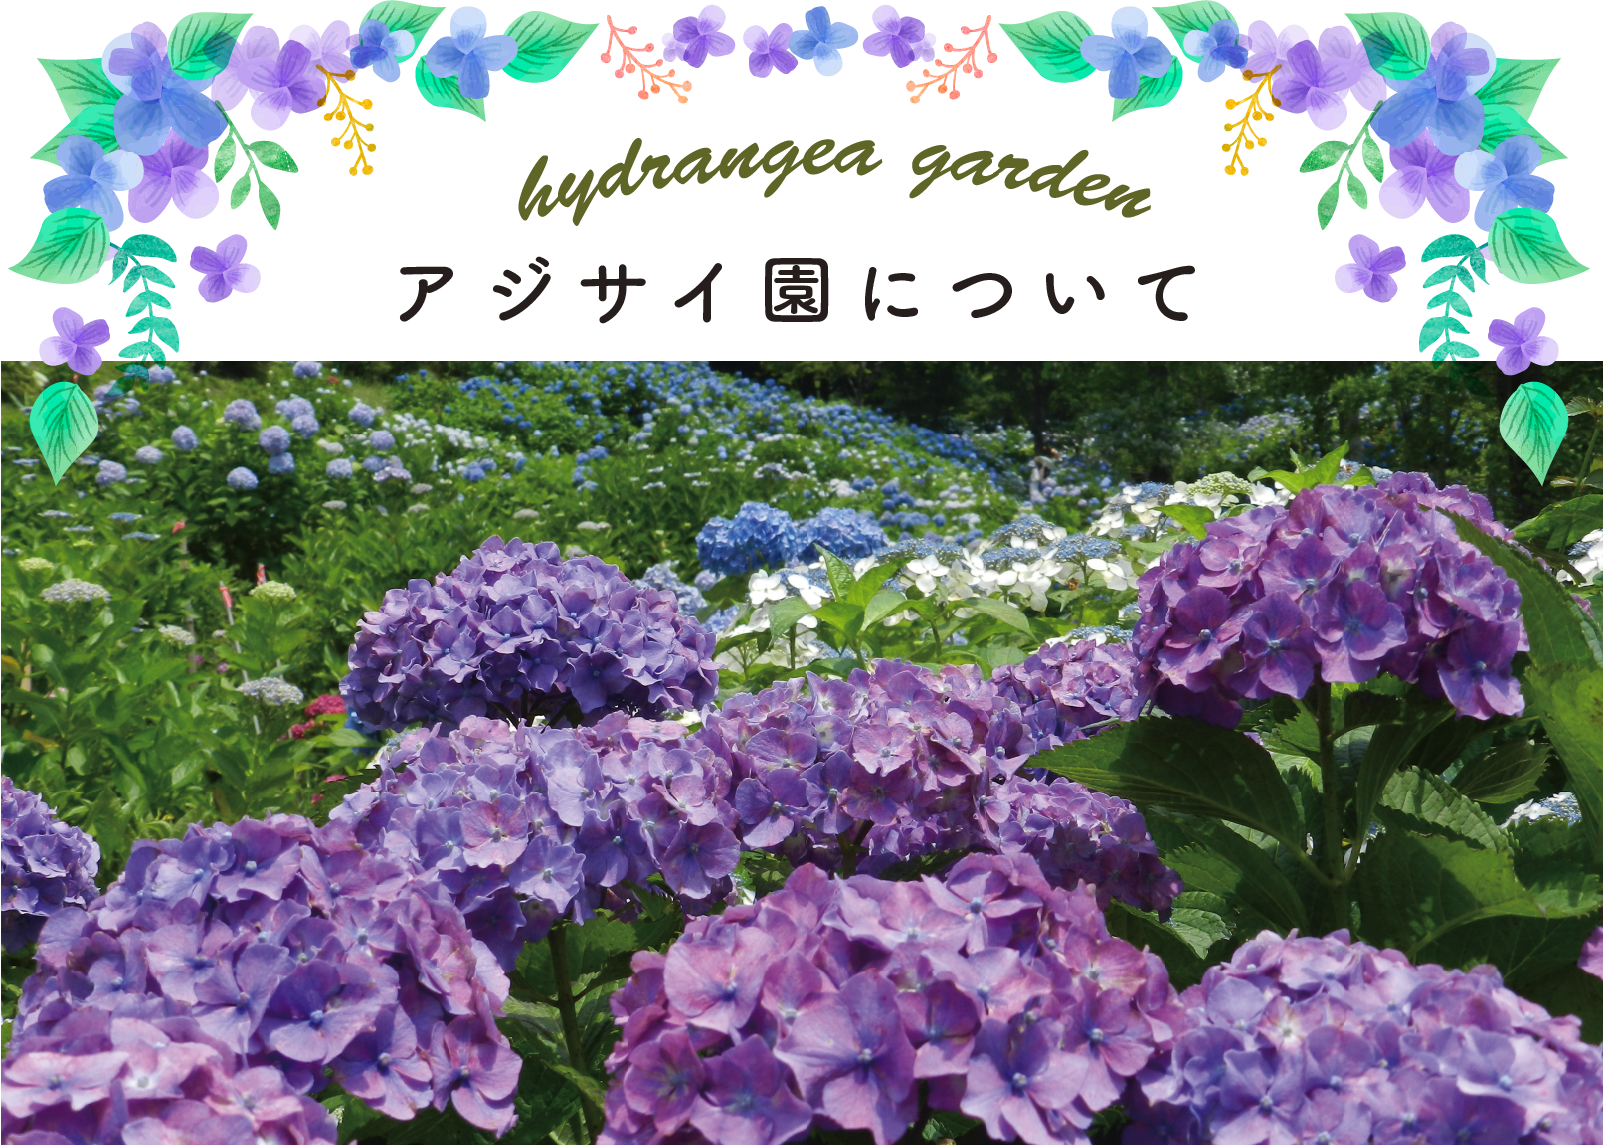 21関西版 紫陽花の絶景名所ランキング13 見頃を知って 観光の思い出に 暮らし の